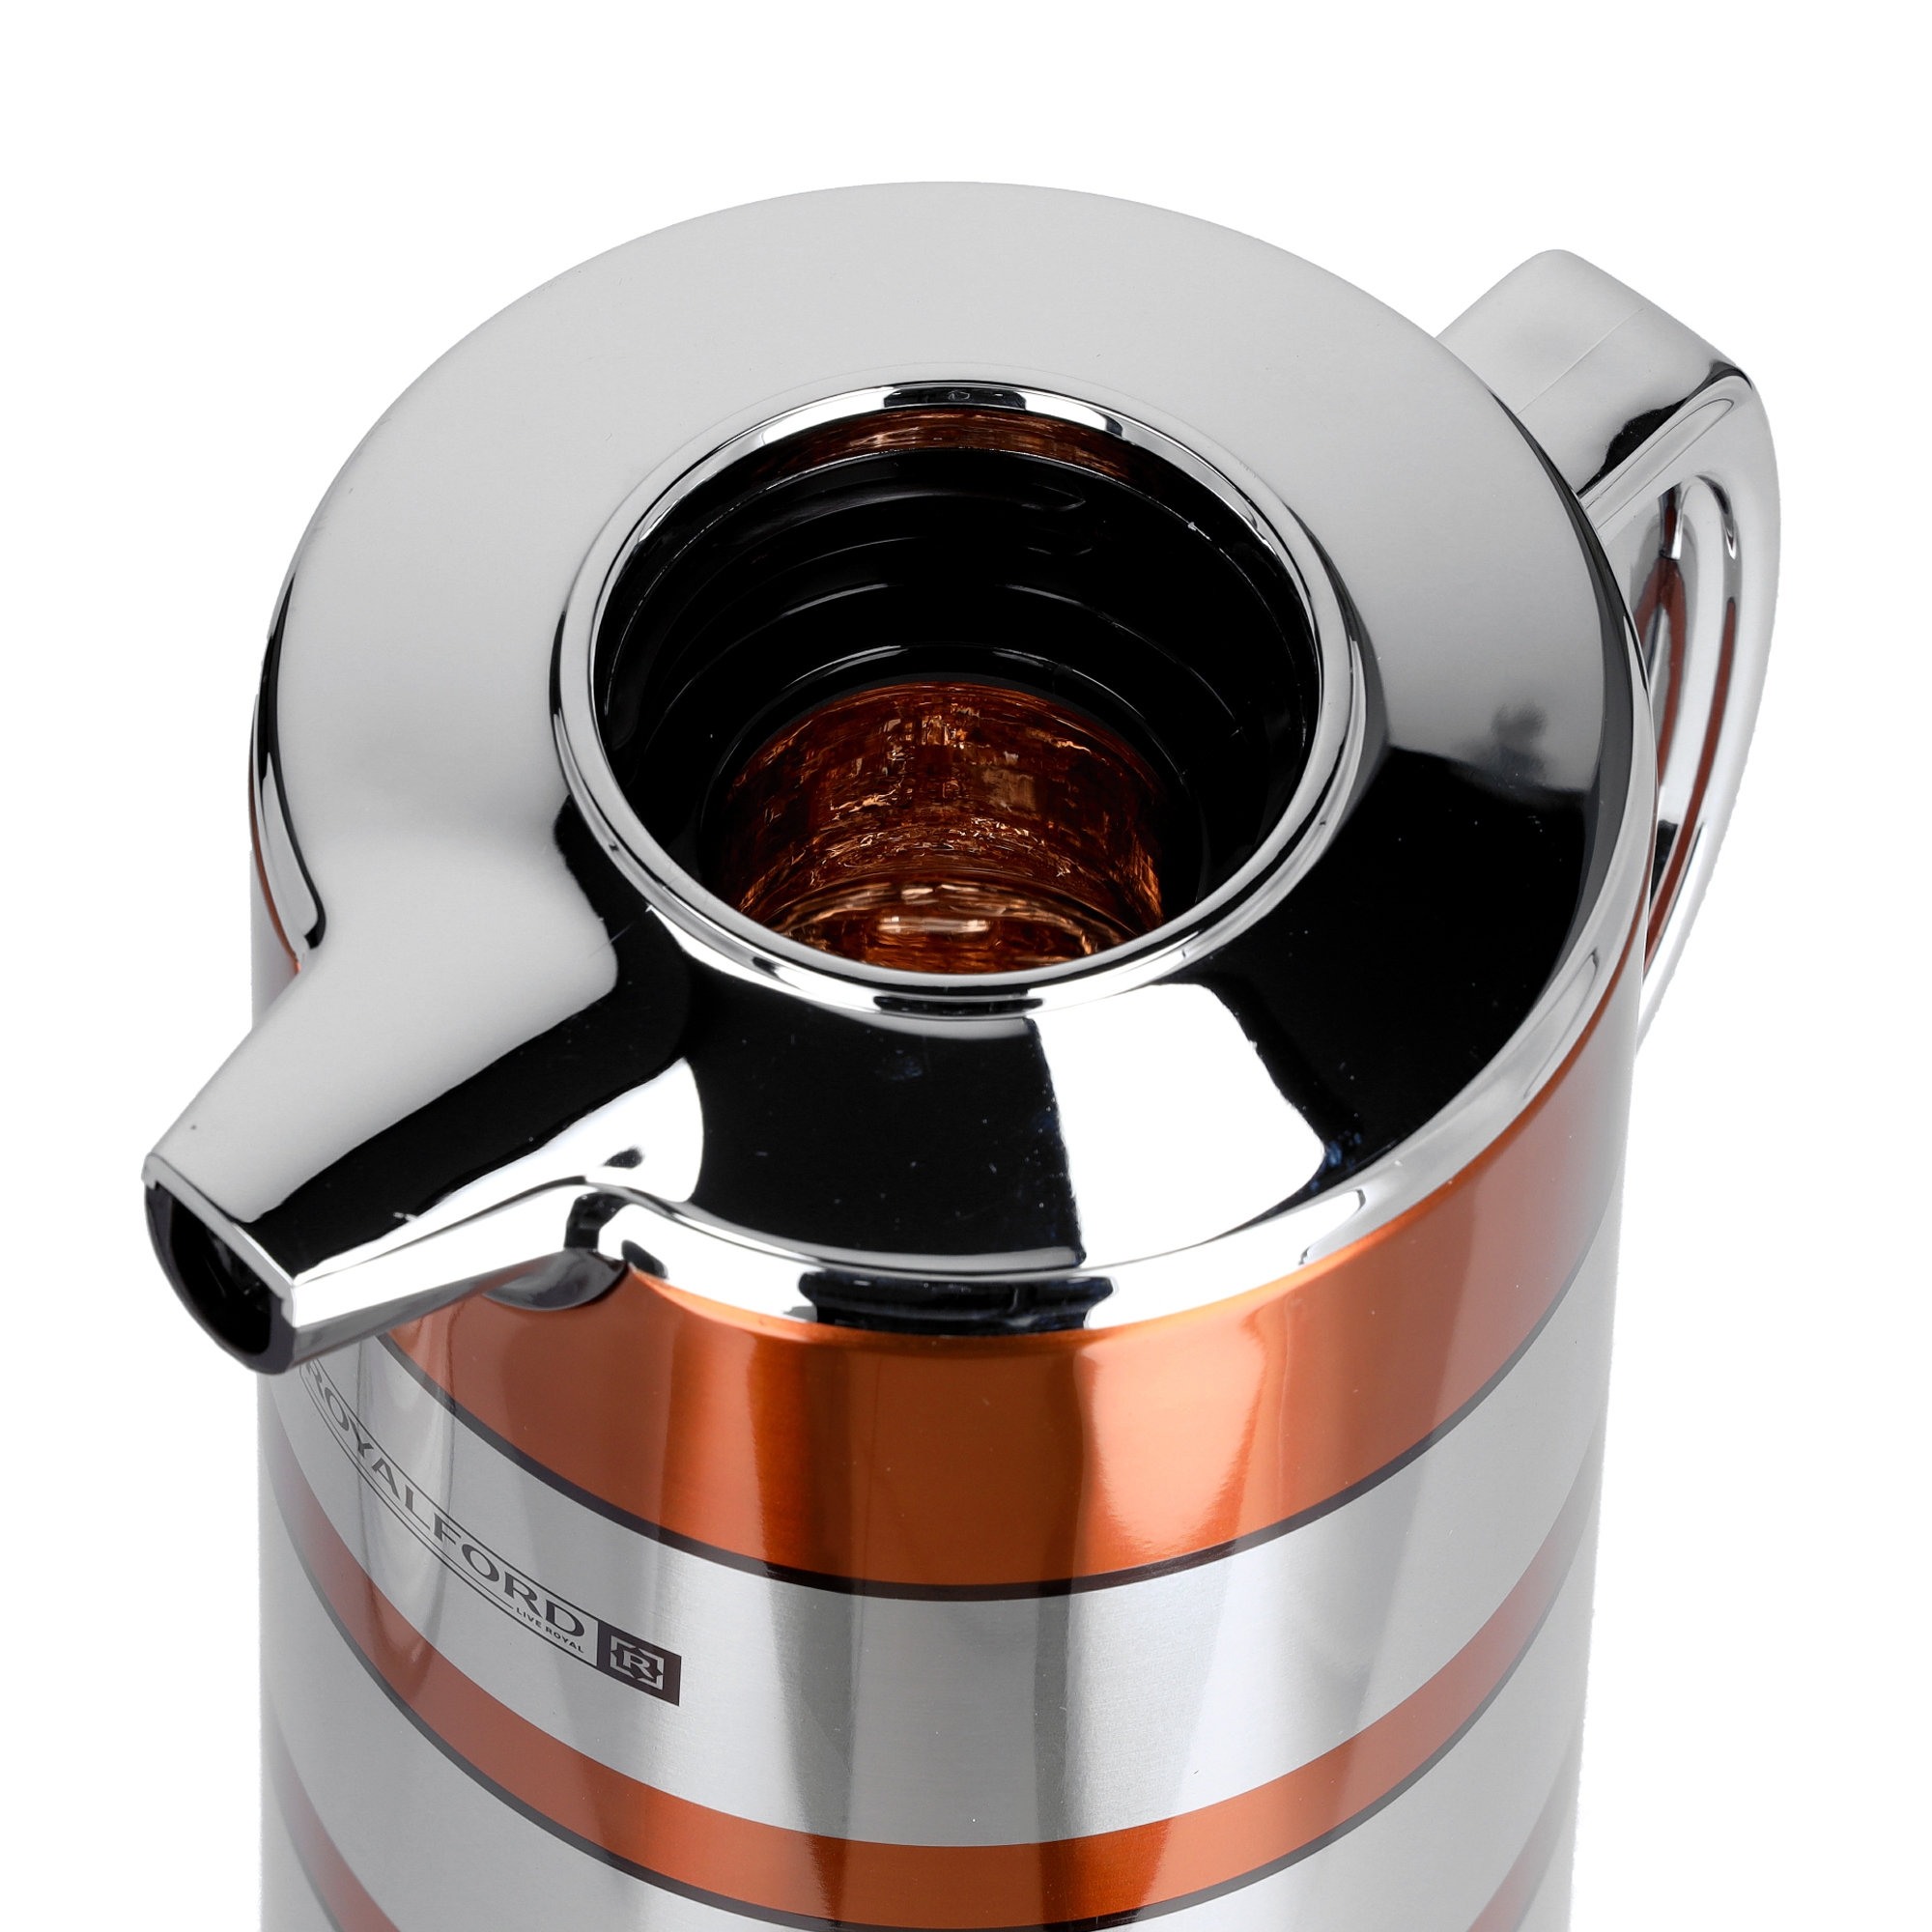 دلة قهوة حافظة للحرارة بسعة 1.6 لتر ذهبي | Royalford 1.6L Double Wall Golden Figured Vacuum Flask